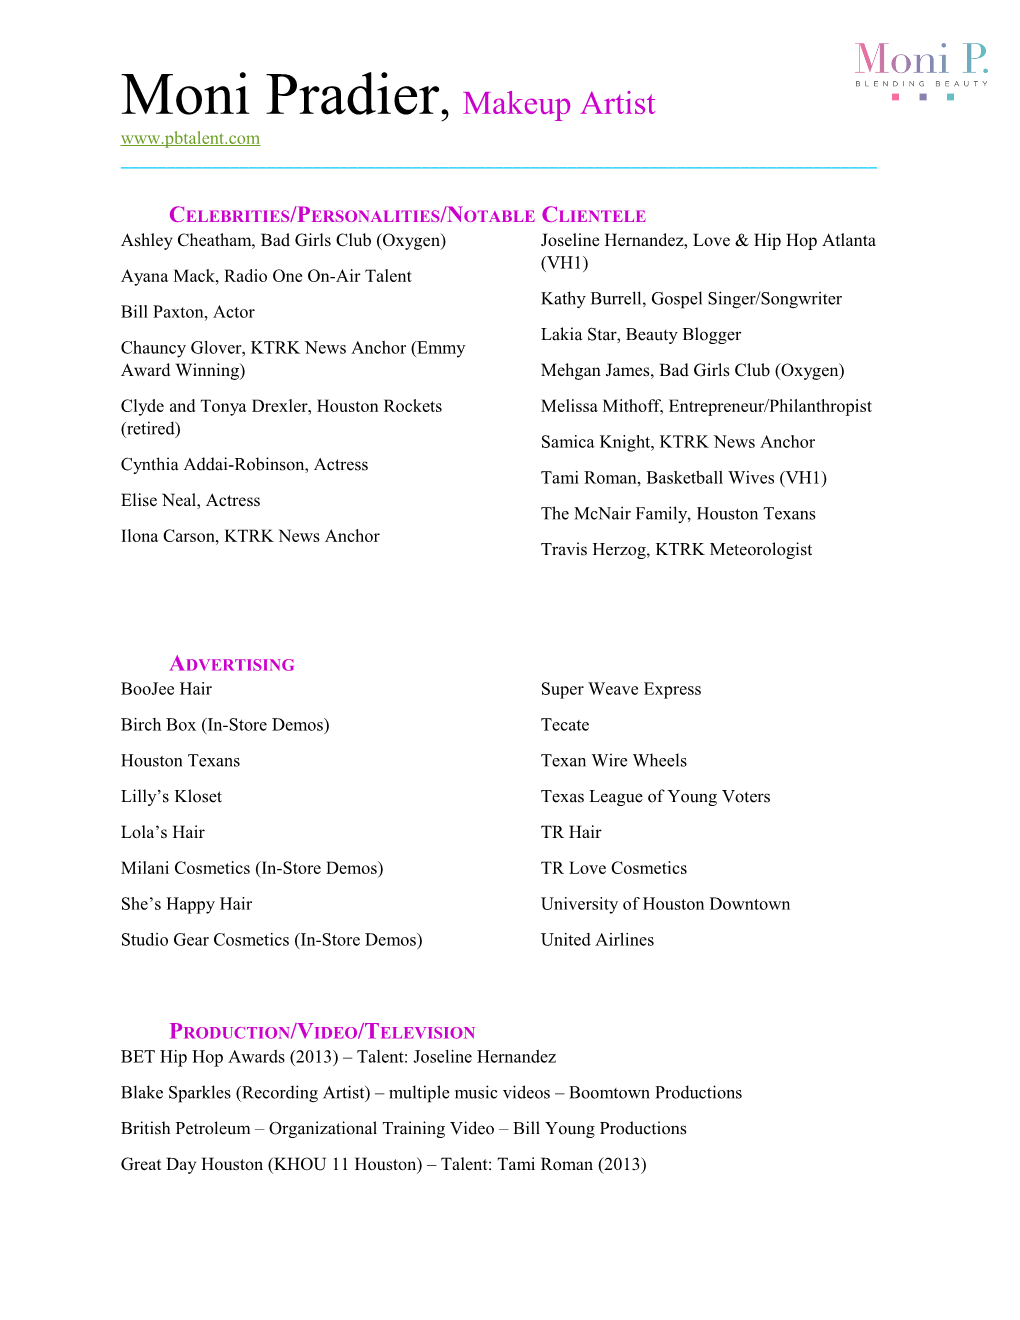 Celebrities/Personalities/Notable Clientele